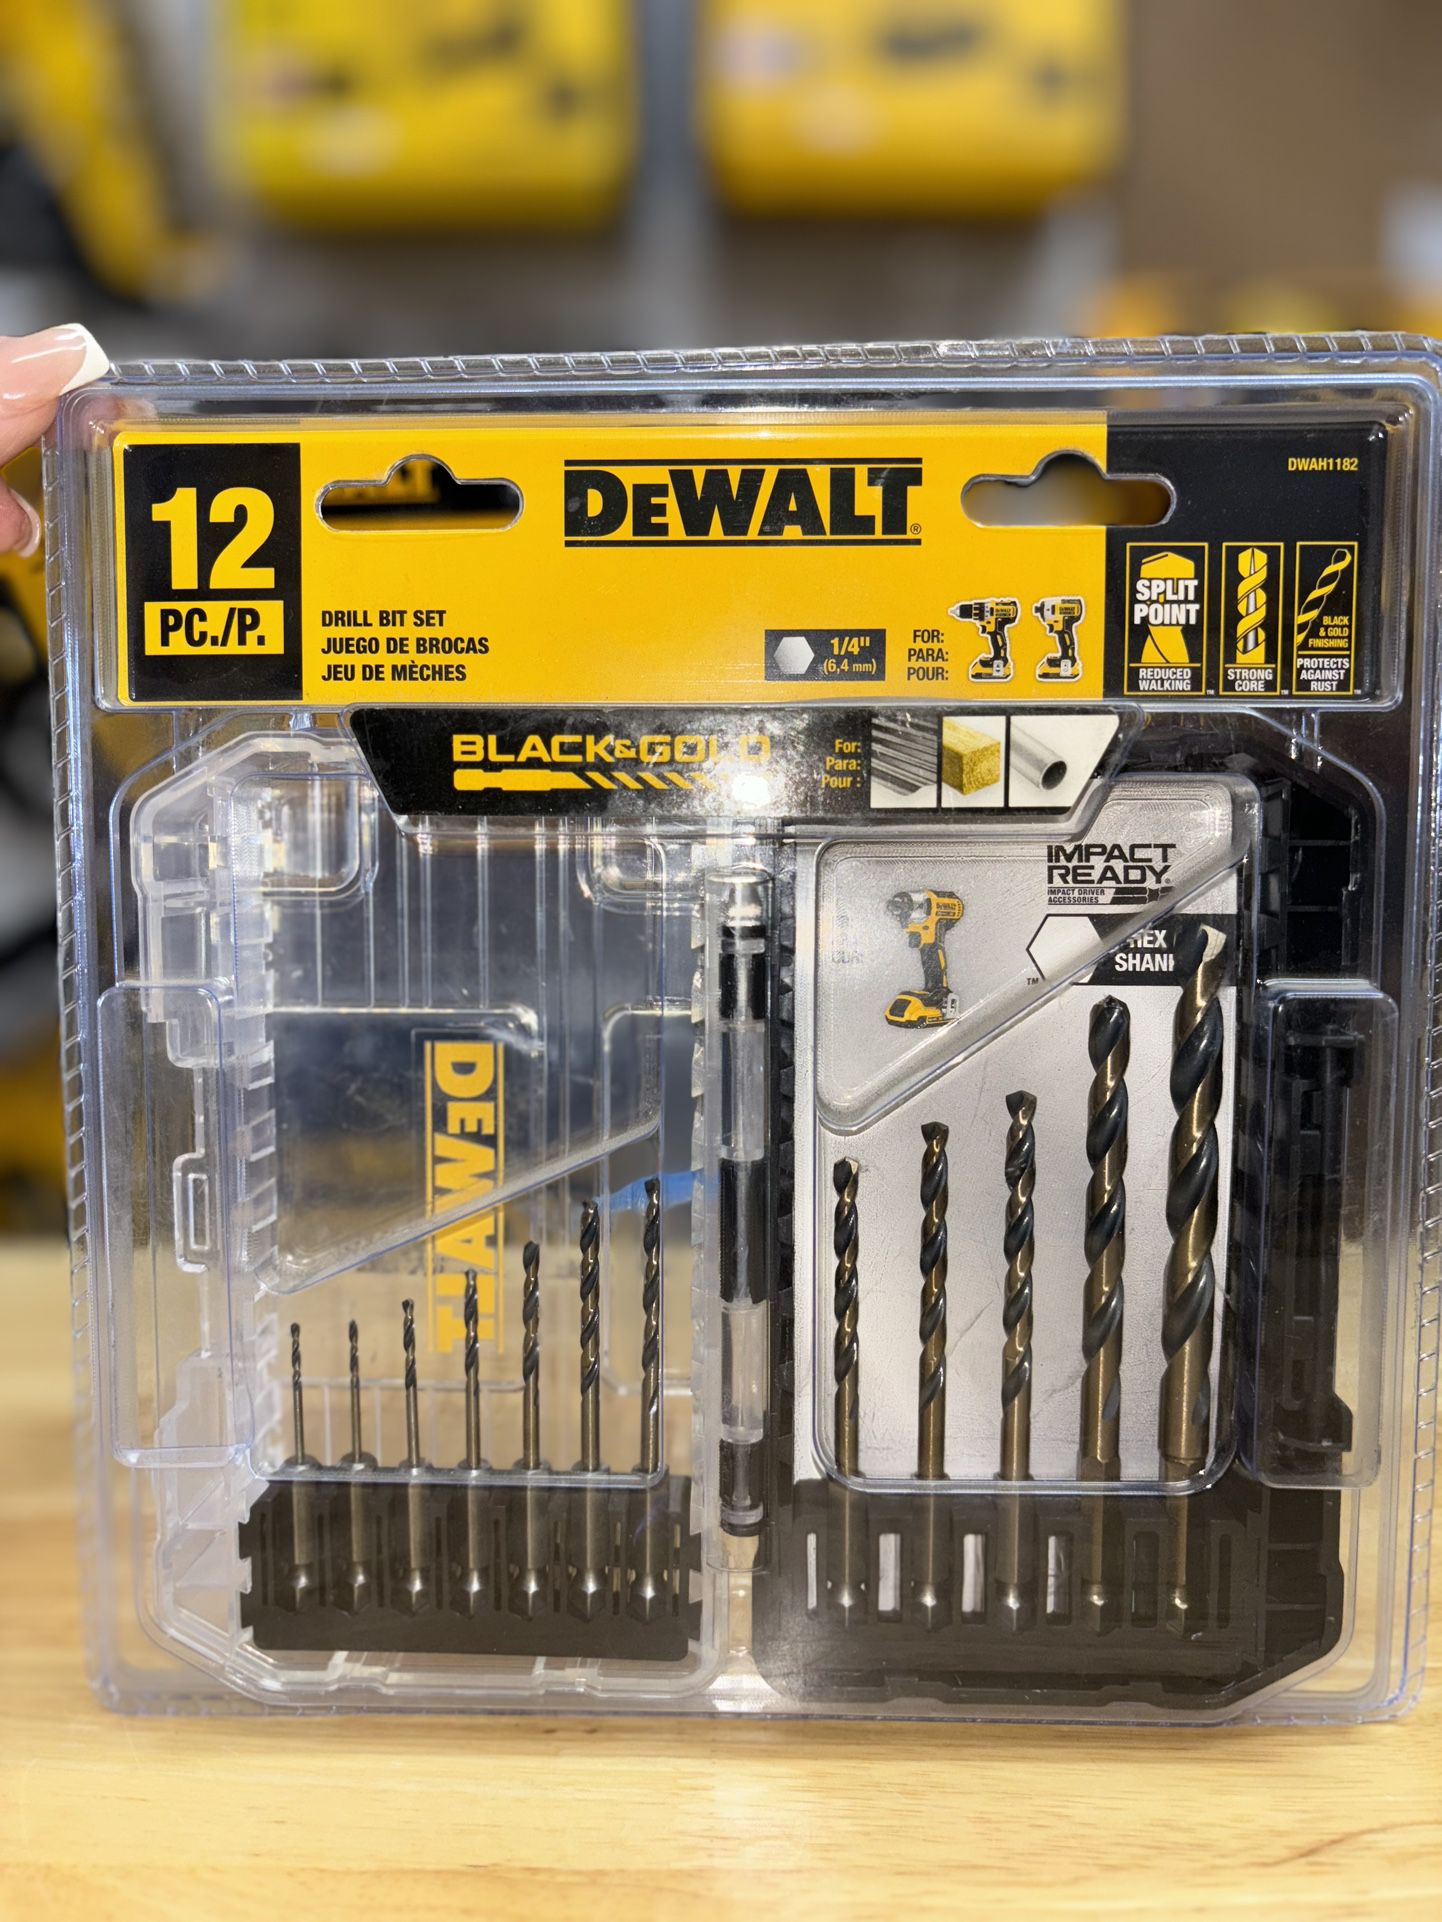 DEWALT Black and Gold Impact Ready Metal Twist Drill Bit Set (12-Piece)